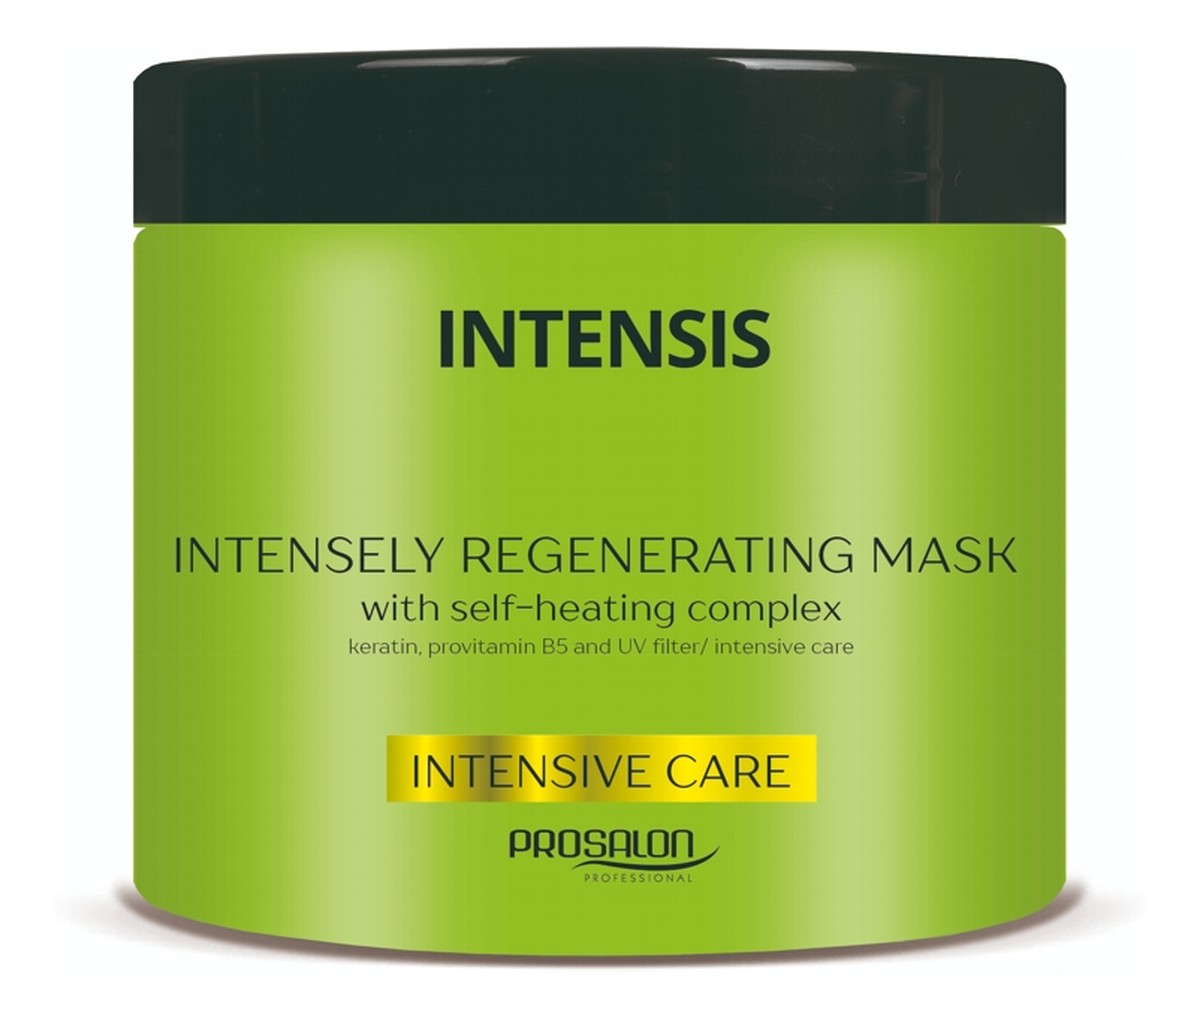 Intensis Intensely Regenerating Mask maska intensywnie regenerująca z kompleksem termicznym